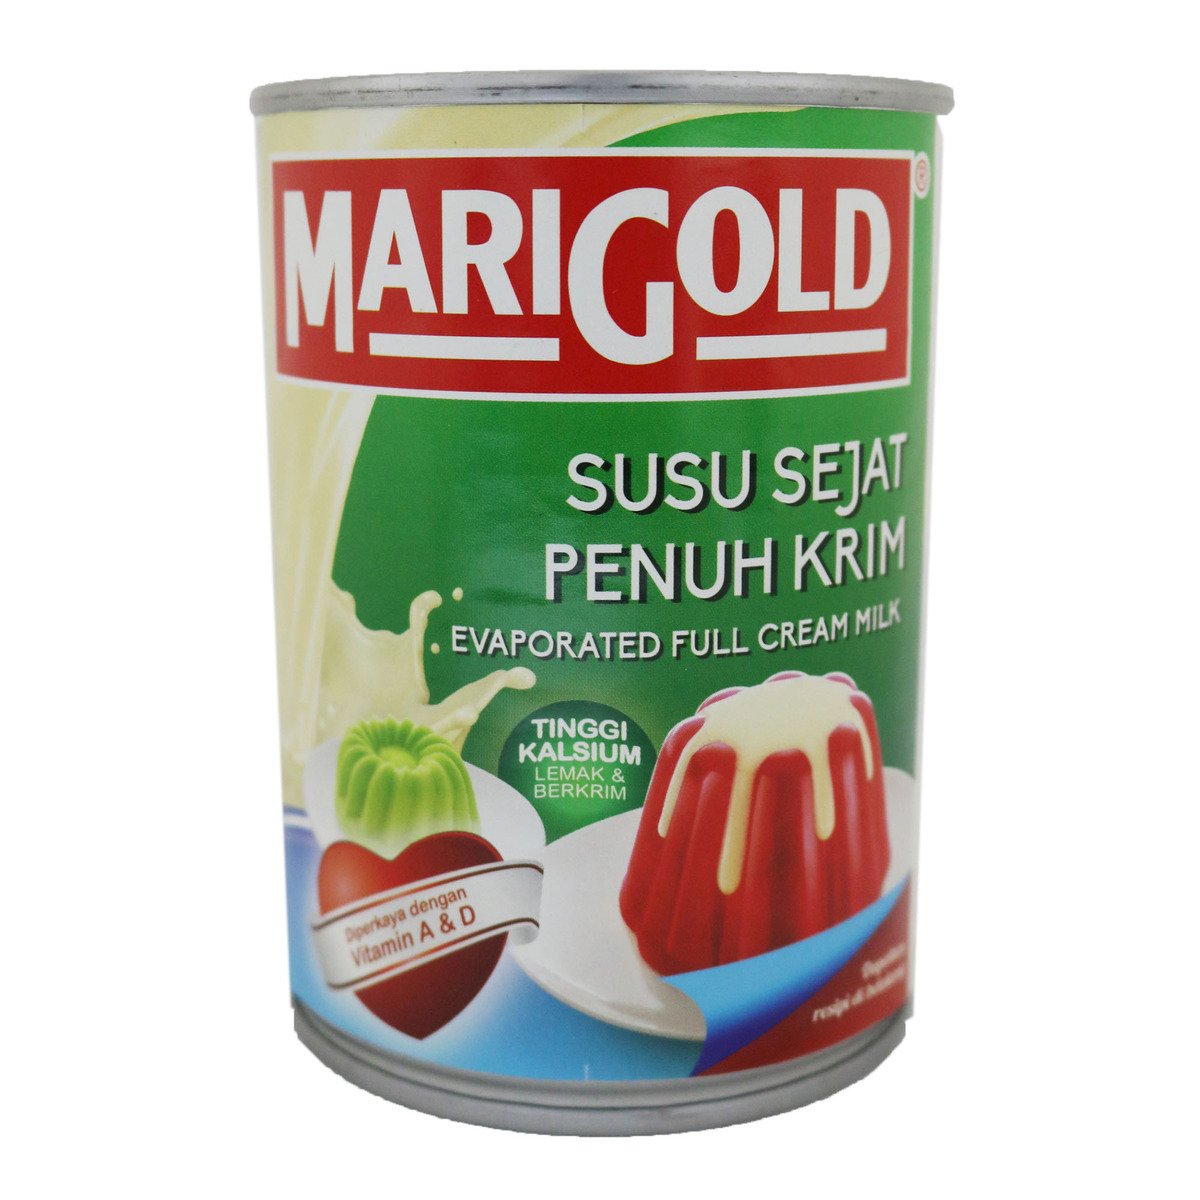 Mari Gold Evaporated Full Cream Milk 390g